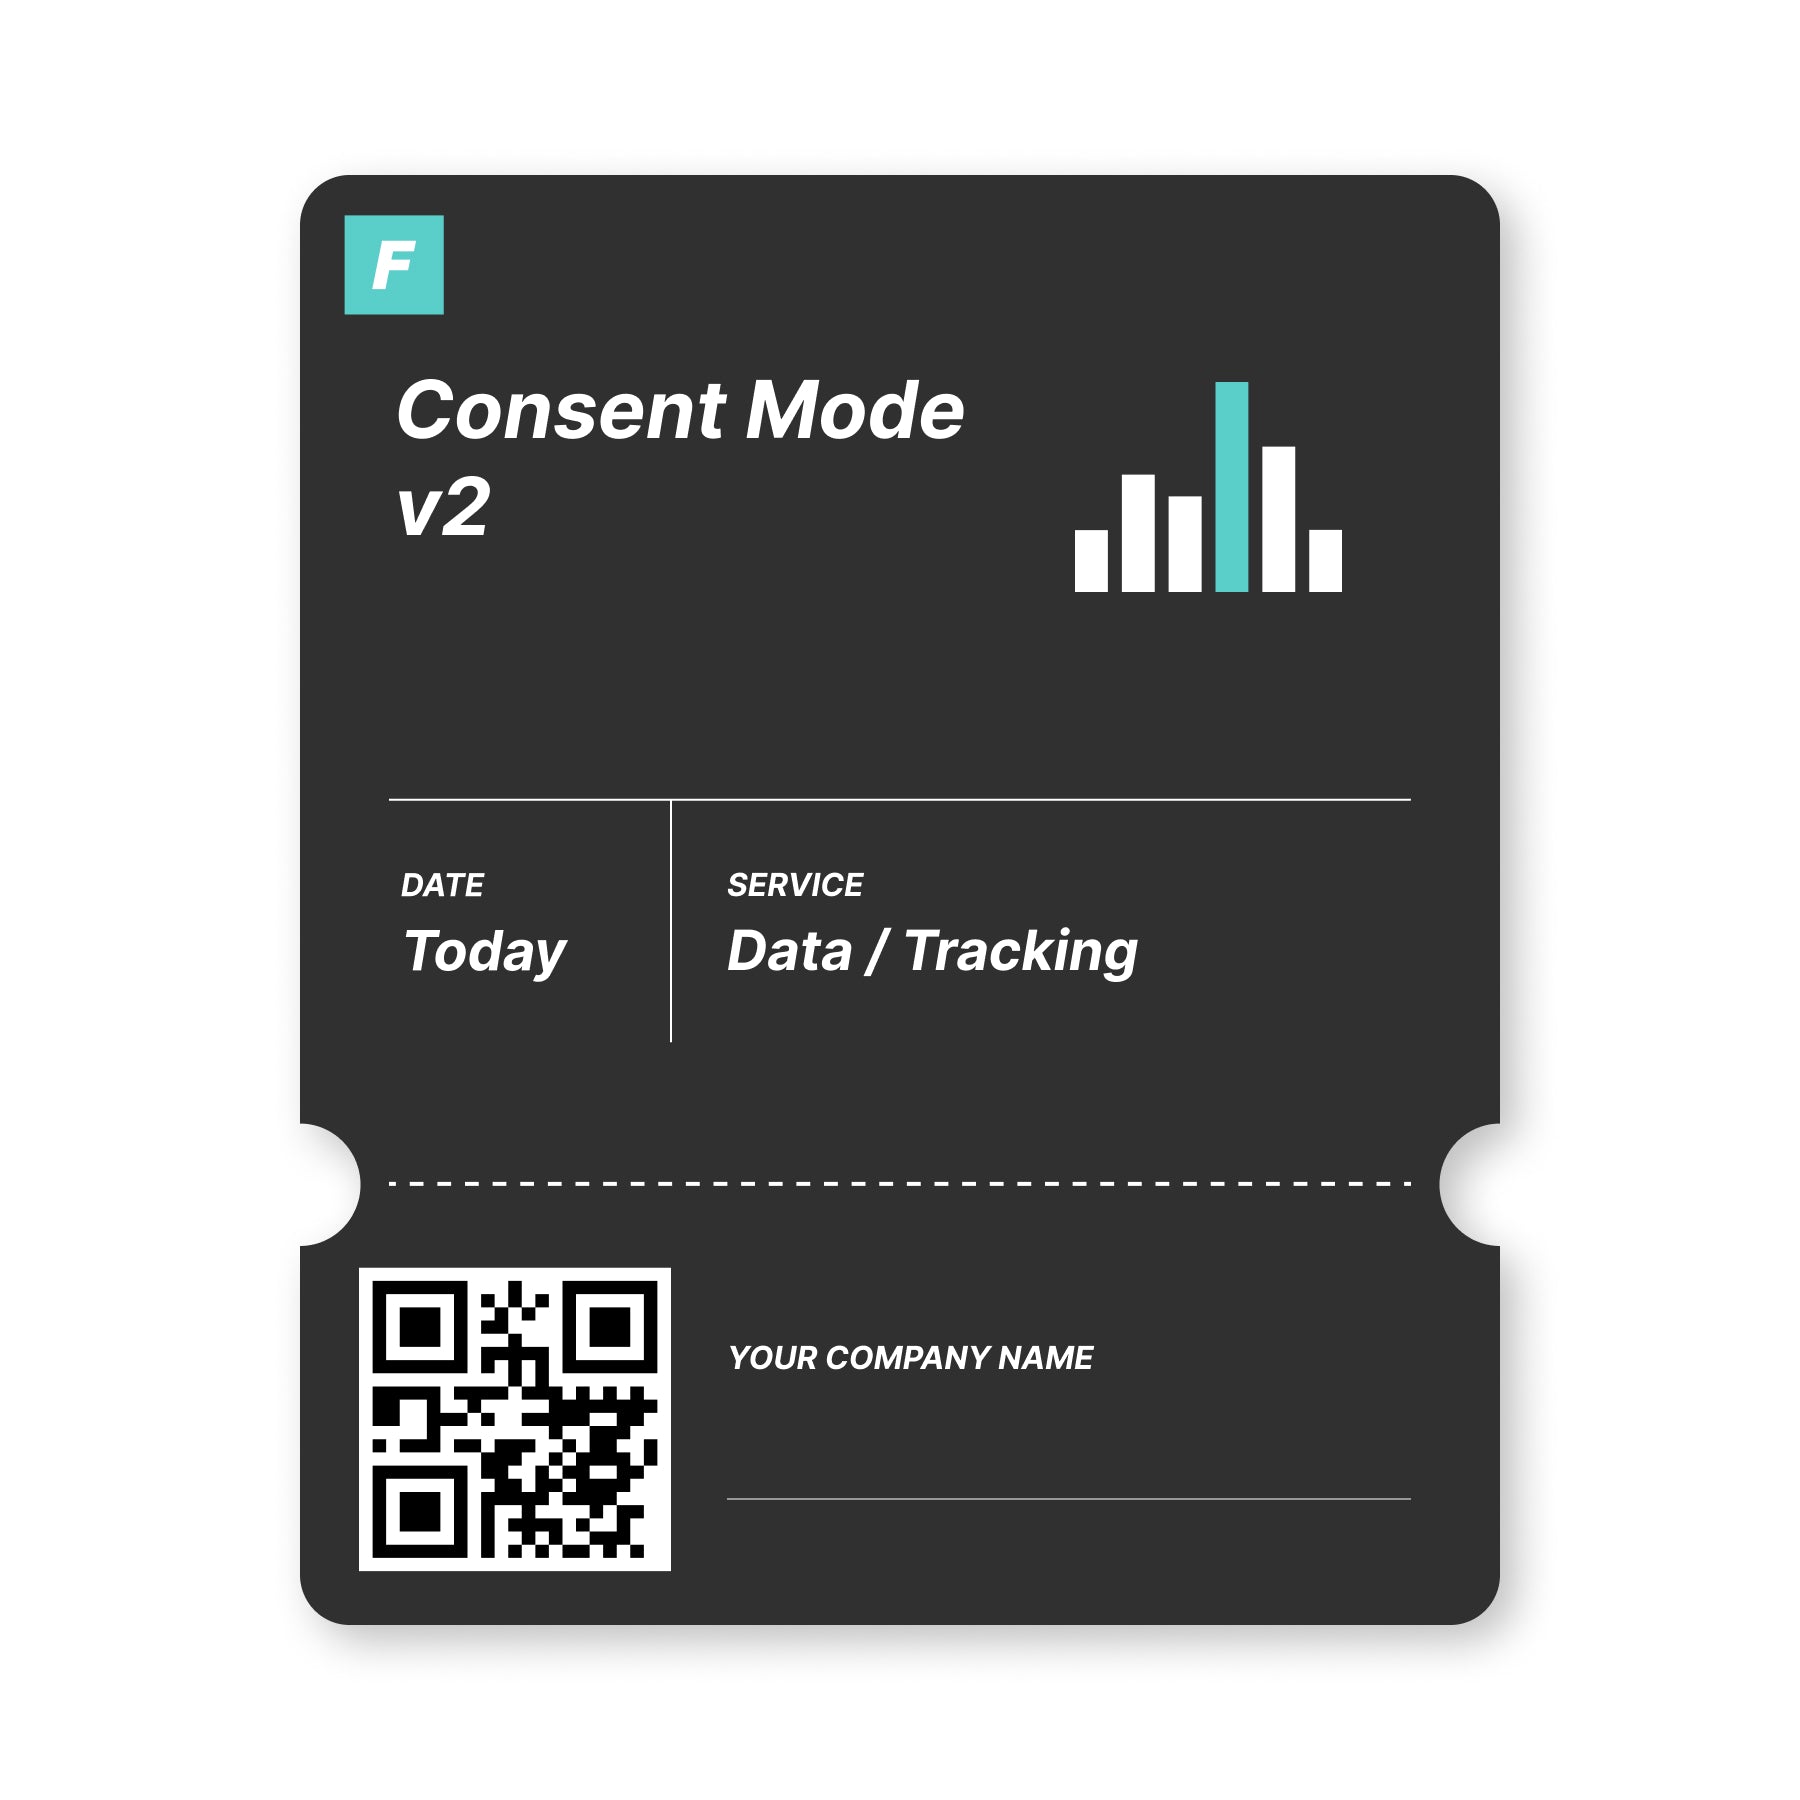 Consent Mode v2